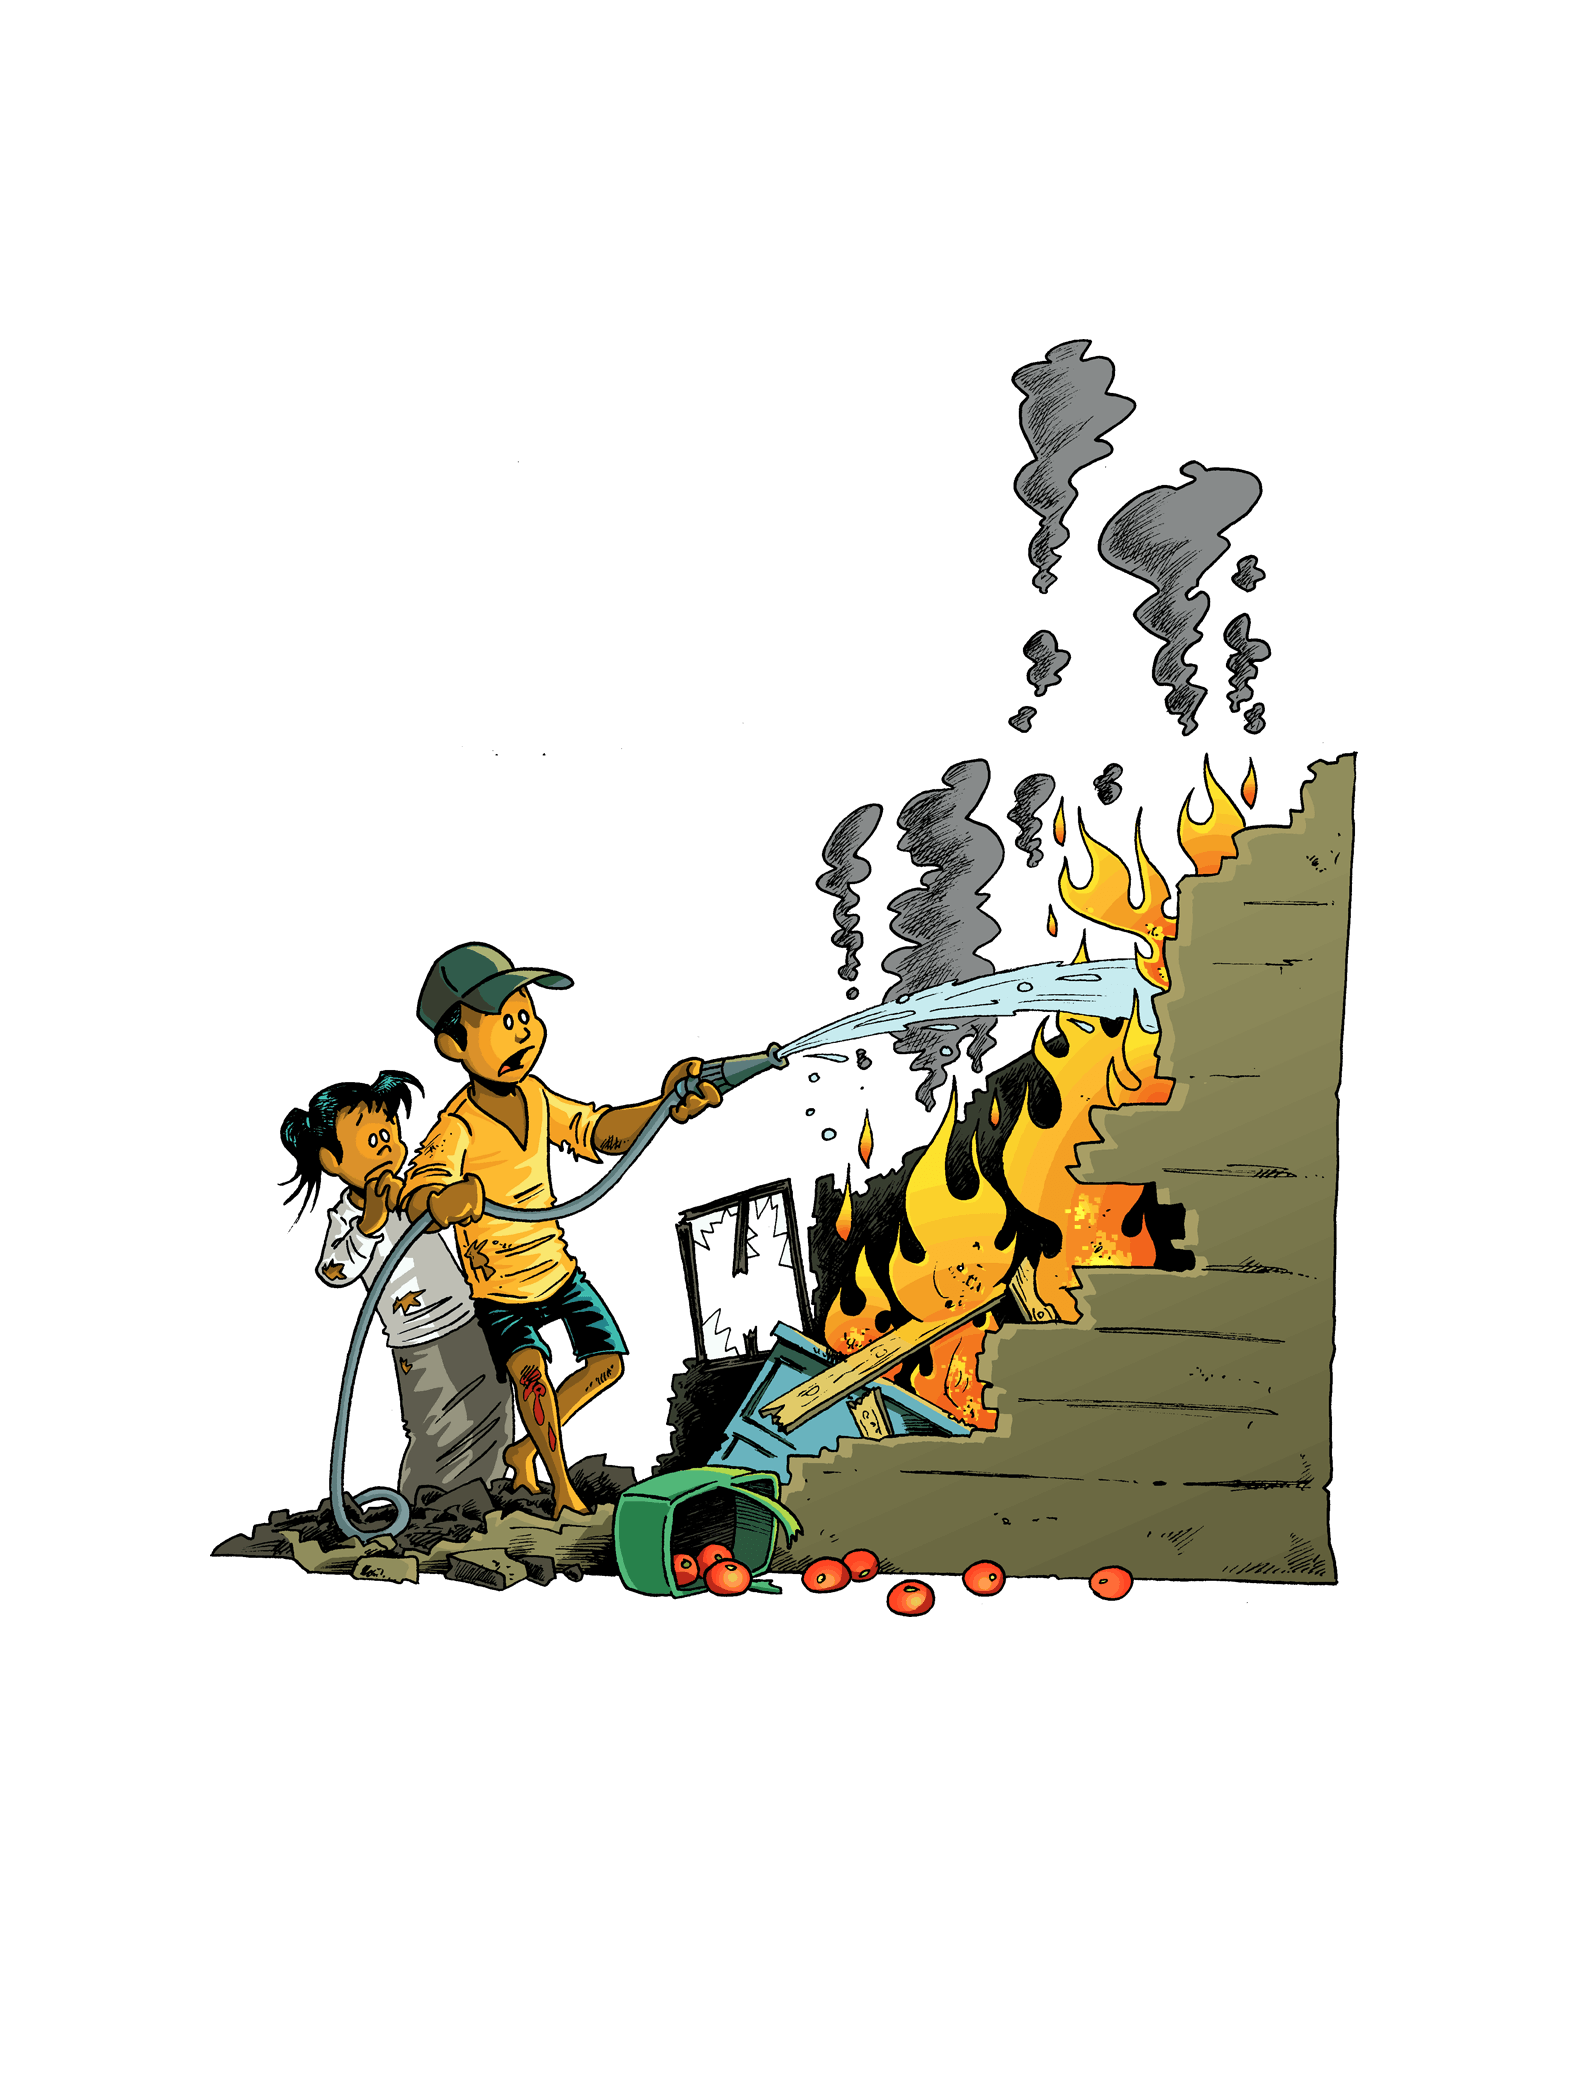 Illustrasjon av to barn som desperat forsøker å slukke en brann som følge av krigføring